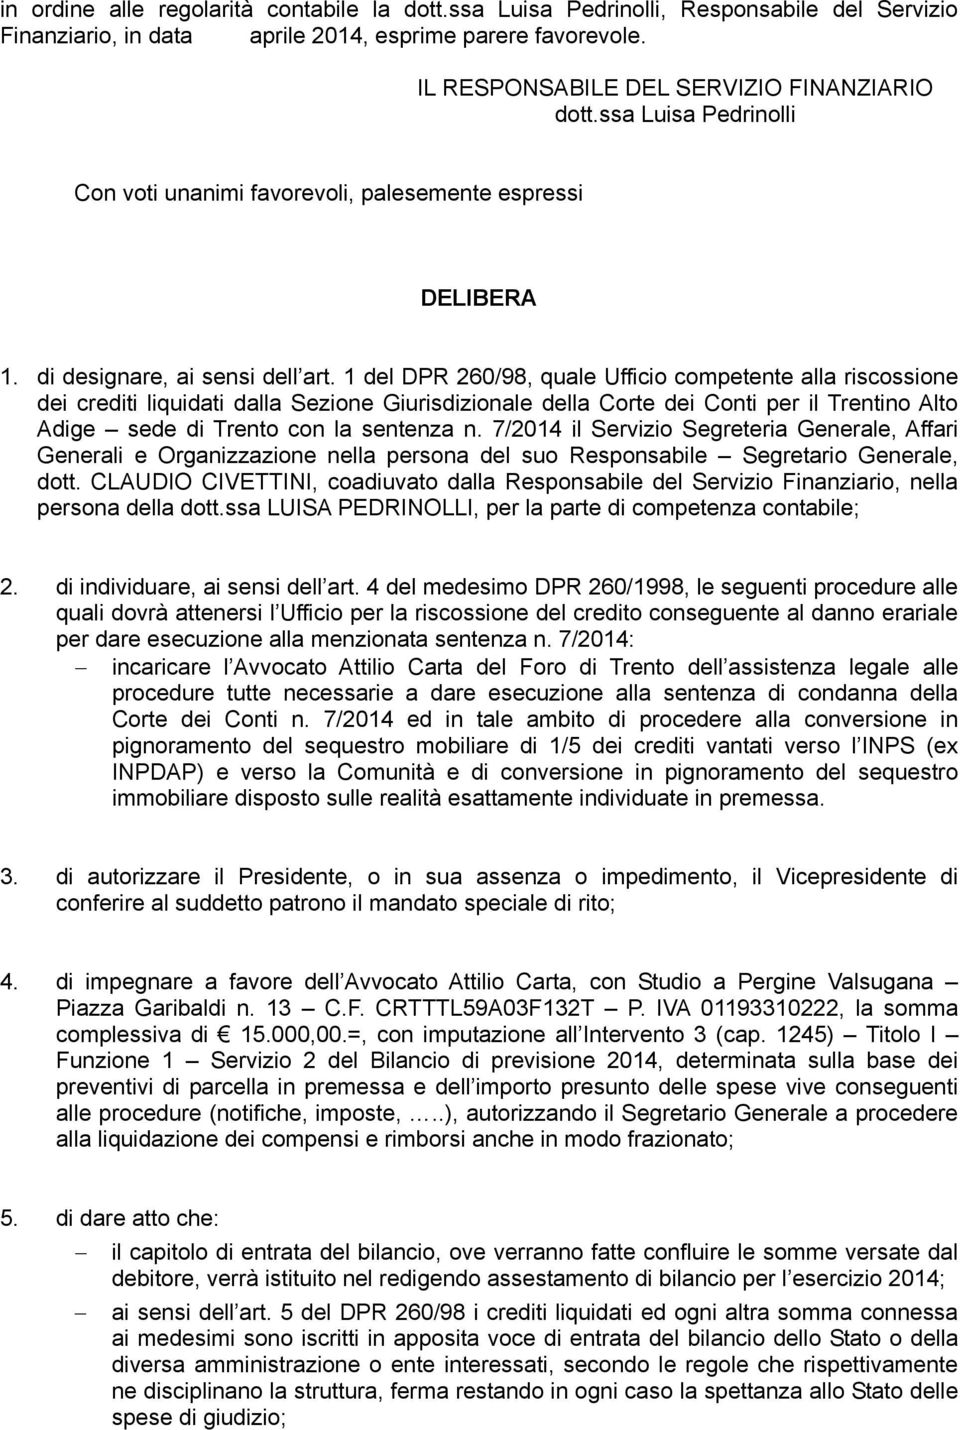 1 del DPR 260/98, quale Ufficio competente alla riscossione dei crediti liquidati dalla Sezione Giurisdizionale della Corte dei Conti per il Trentino Alto Adige sede di Trento con la sentenza n.